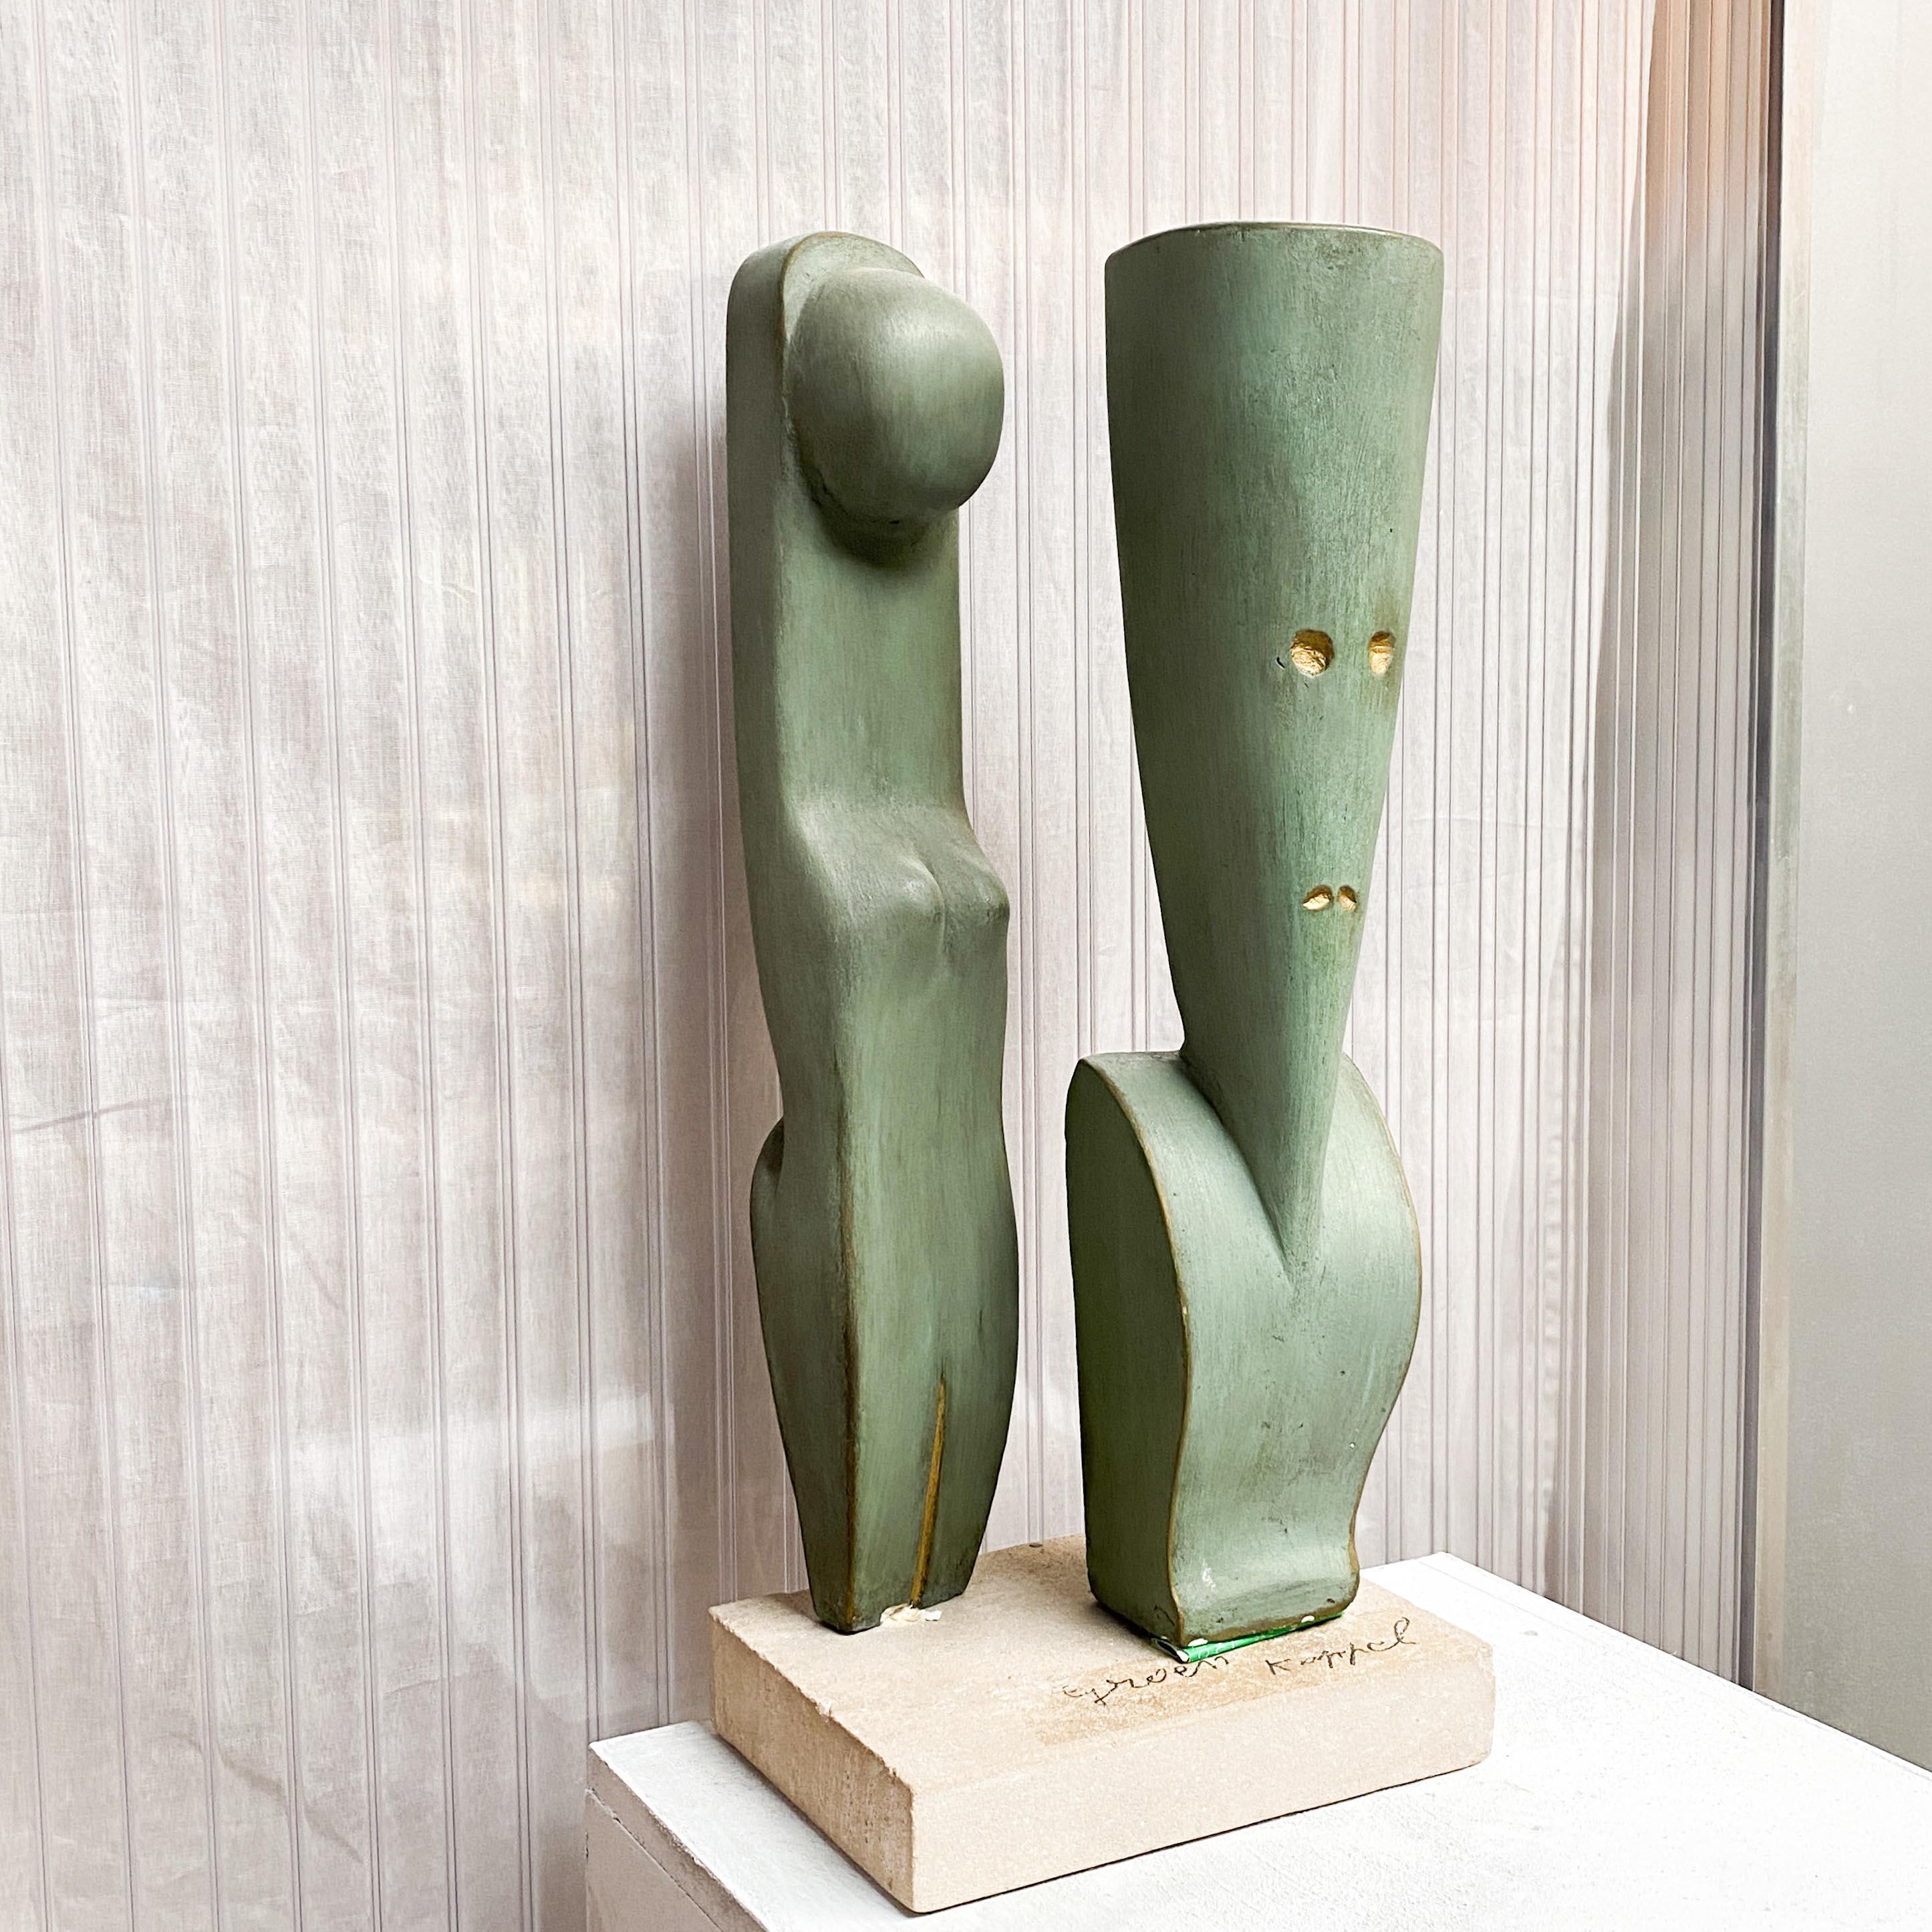 Intéressante sculpture moderniste en plâtre représentant un couple stylisé. Réalisé par un artiste belge inconnu.

Une paire de formes abstraites intruses, l'une représentant une forme féminine, l'autre un homme. Formes stylisées, rappelant les